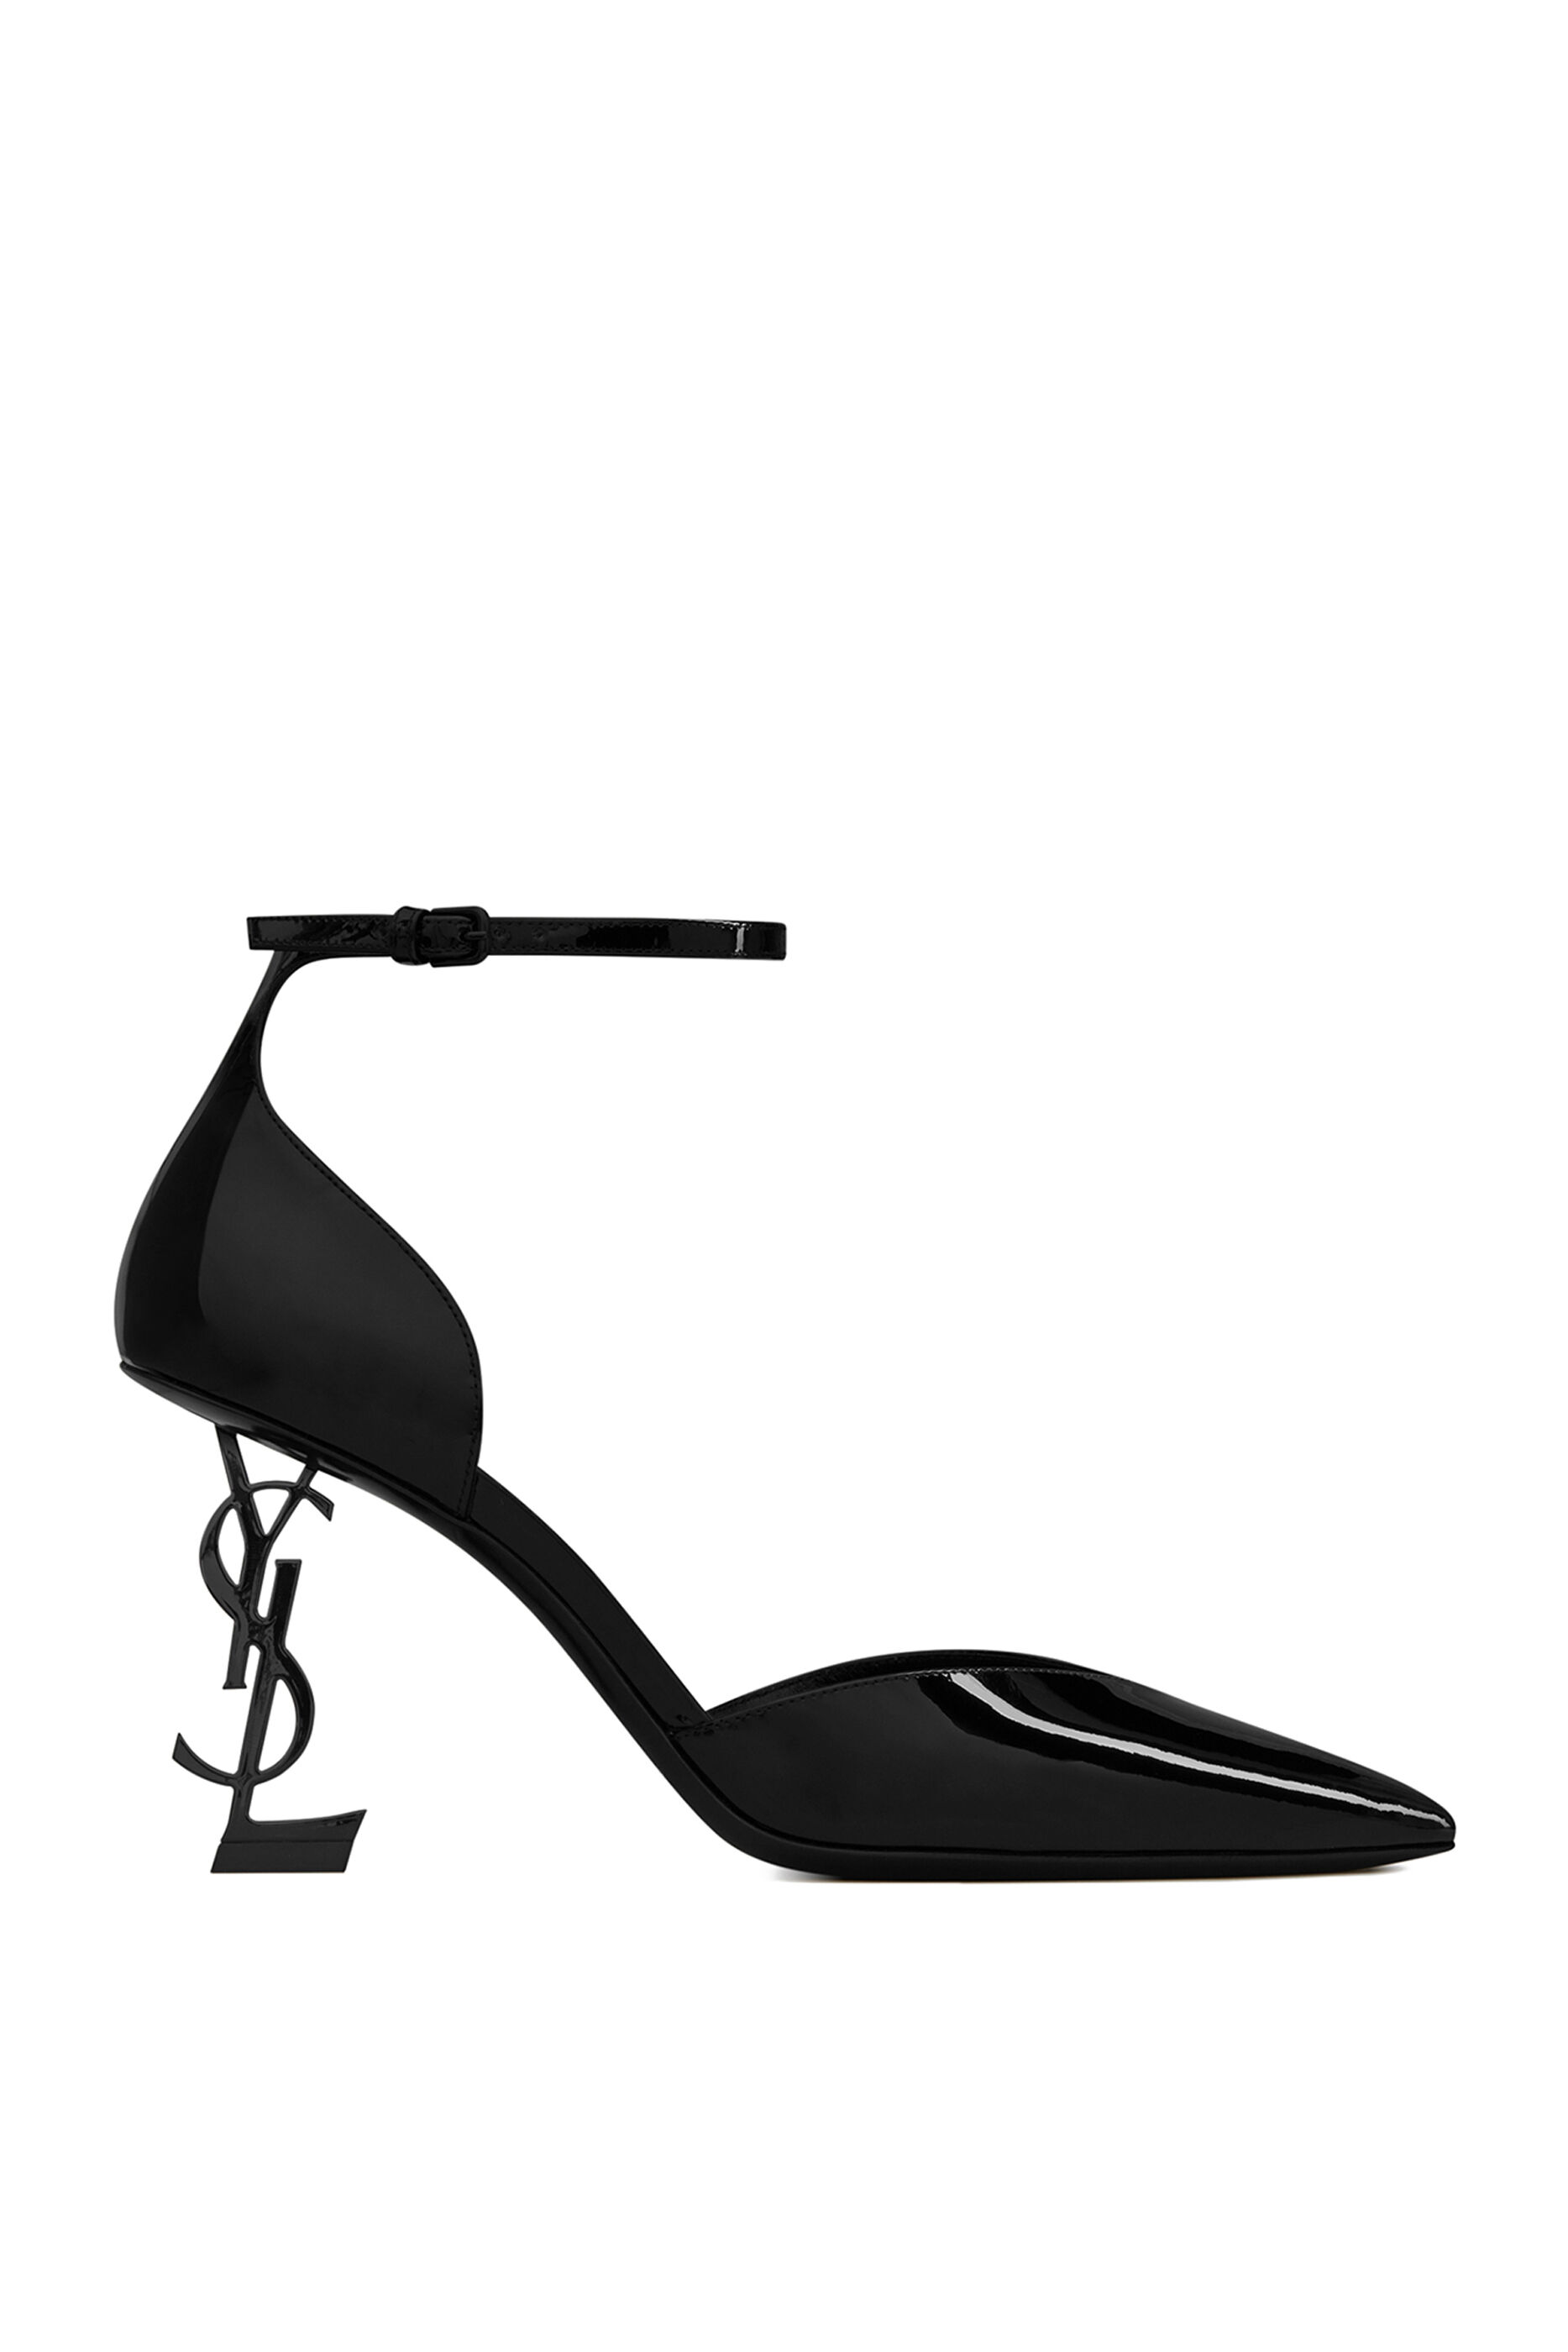 ysl monogram heels